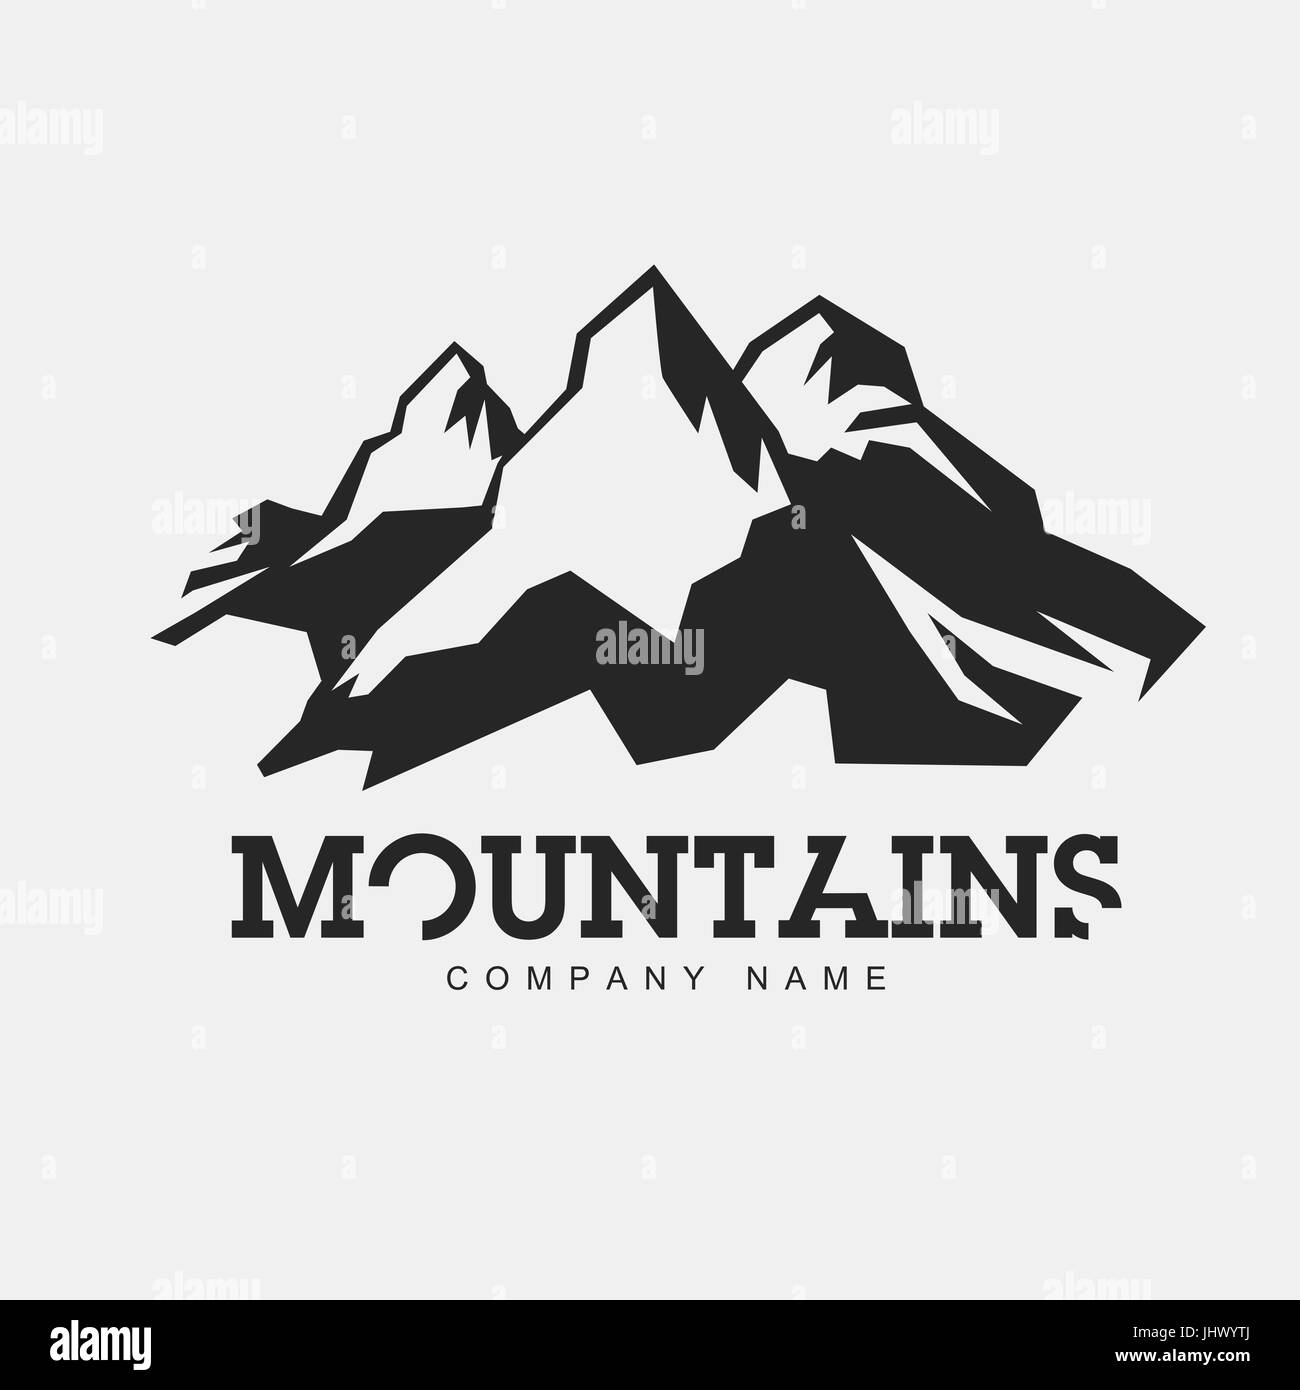 Ilustración de las montañas. Vector logo abstracto para el tema de la aventura. Aislado sobre fondo blanco. Plantilla de logotipo de montañismo. Ilustración del Vector